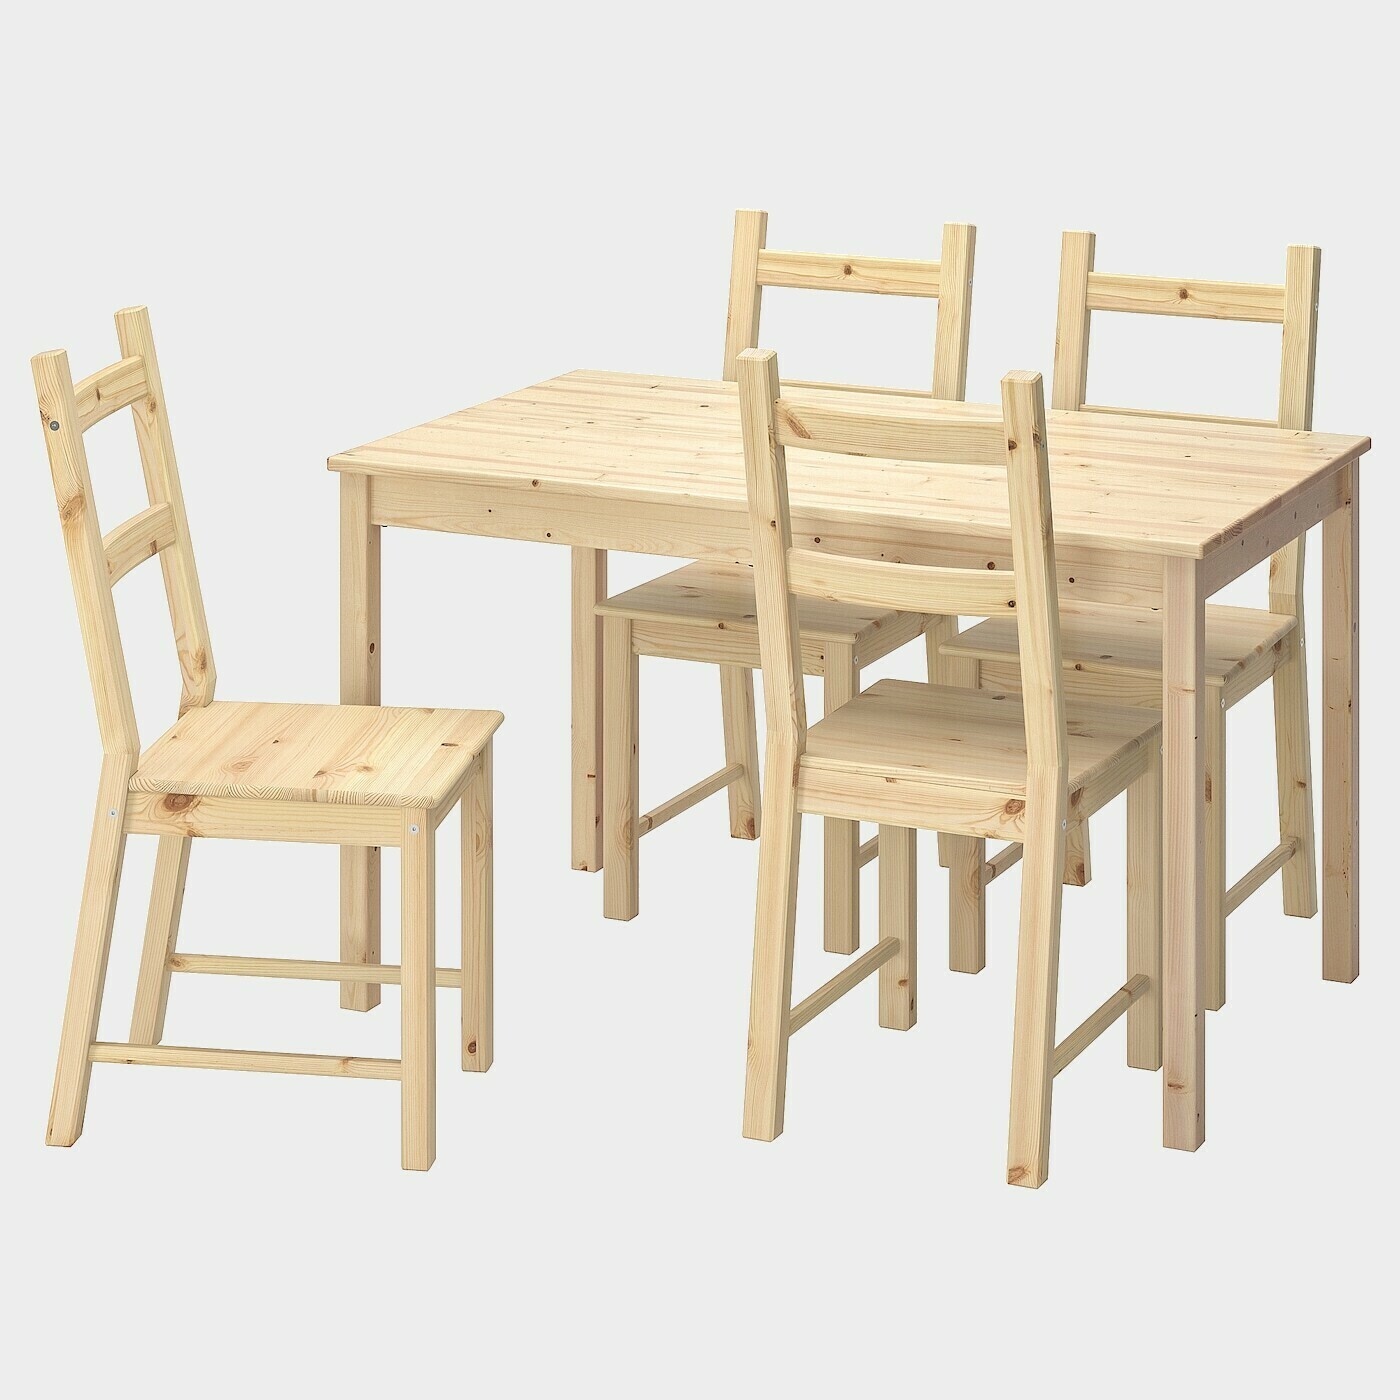 INGO / IVAR Tisch und 4 Stühle  - Essplatzgruppe - Möbel Ideen für dein Zuhause von Home Trends. Möbel Trends von Social Media Influencer für dein Skandi Zuhause.